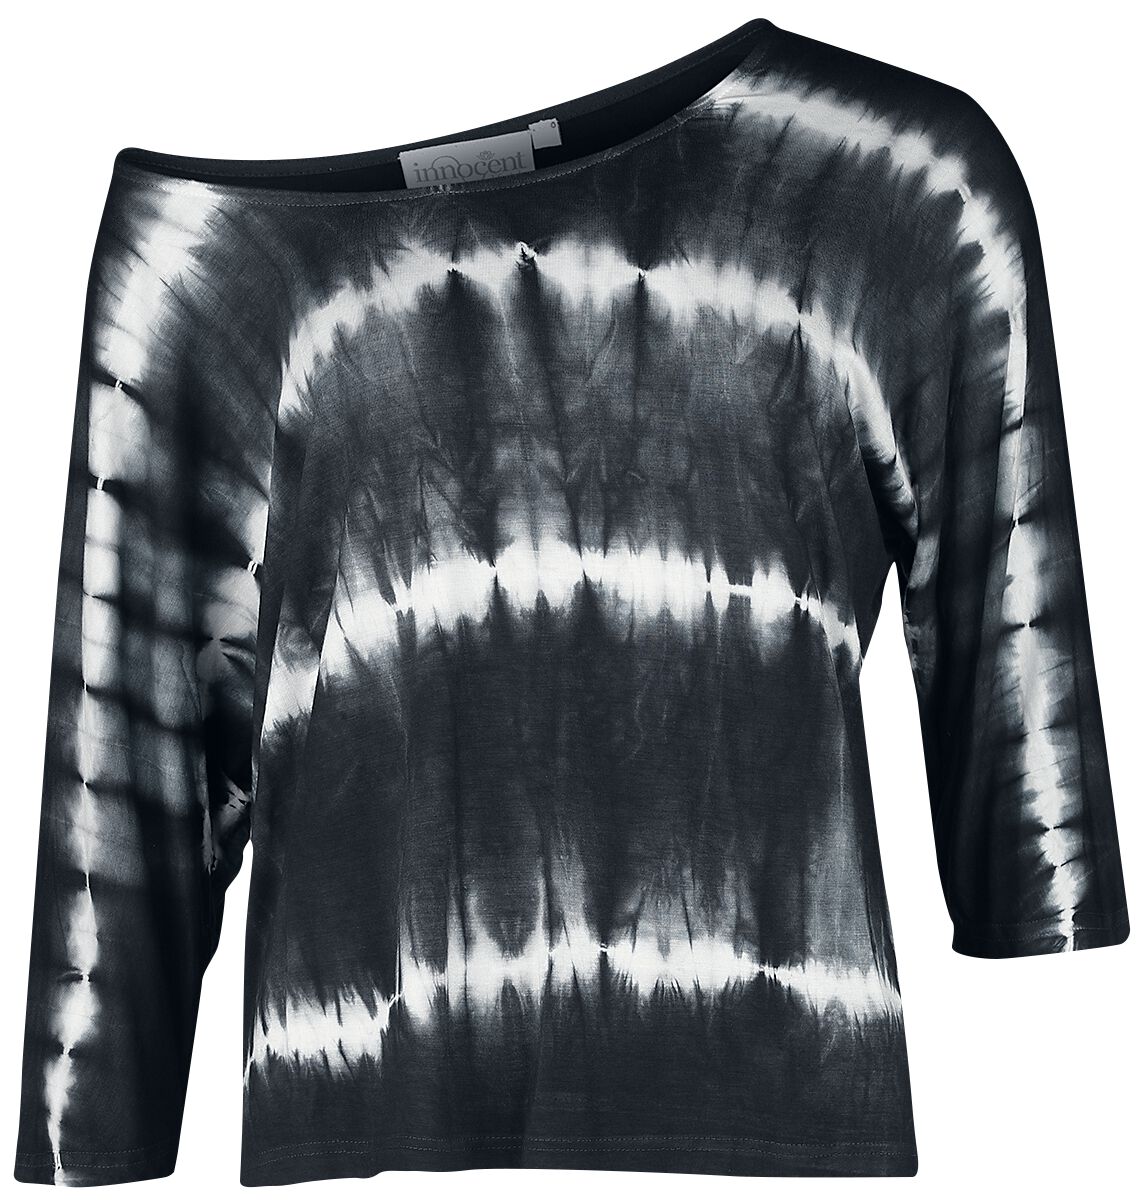 T-shirt manches longues Gothic de Innocent - Solana Top - XS à XXL - pour Femme - noir/blanc